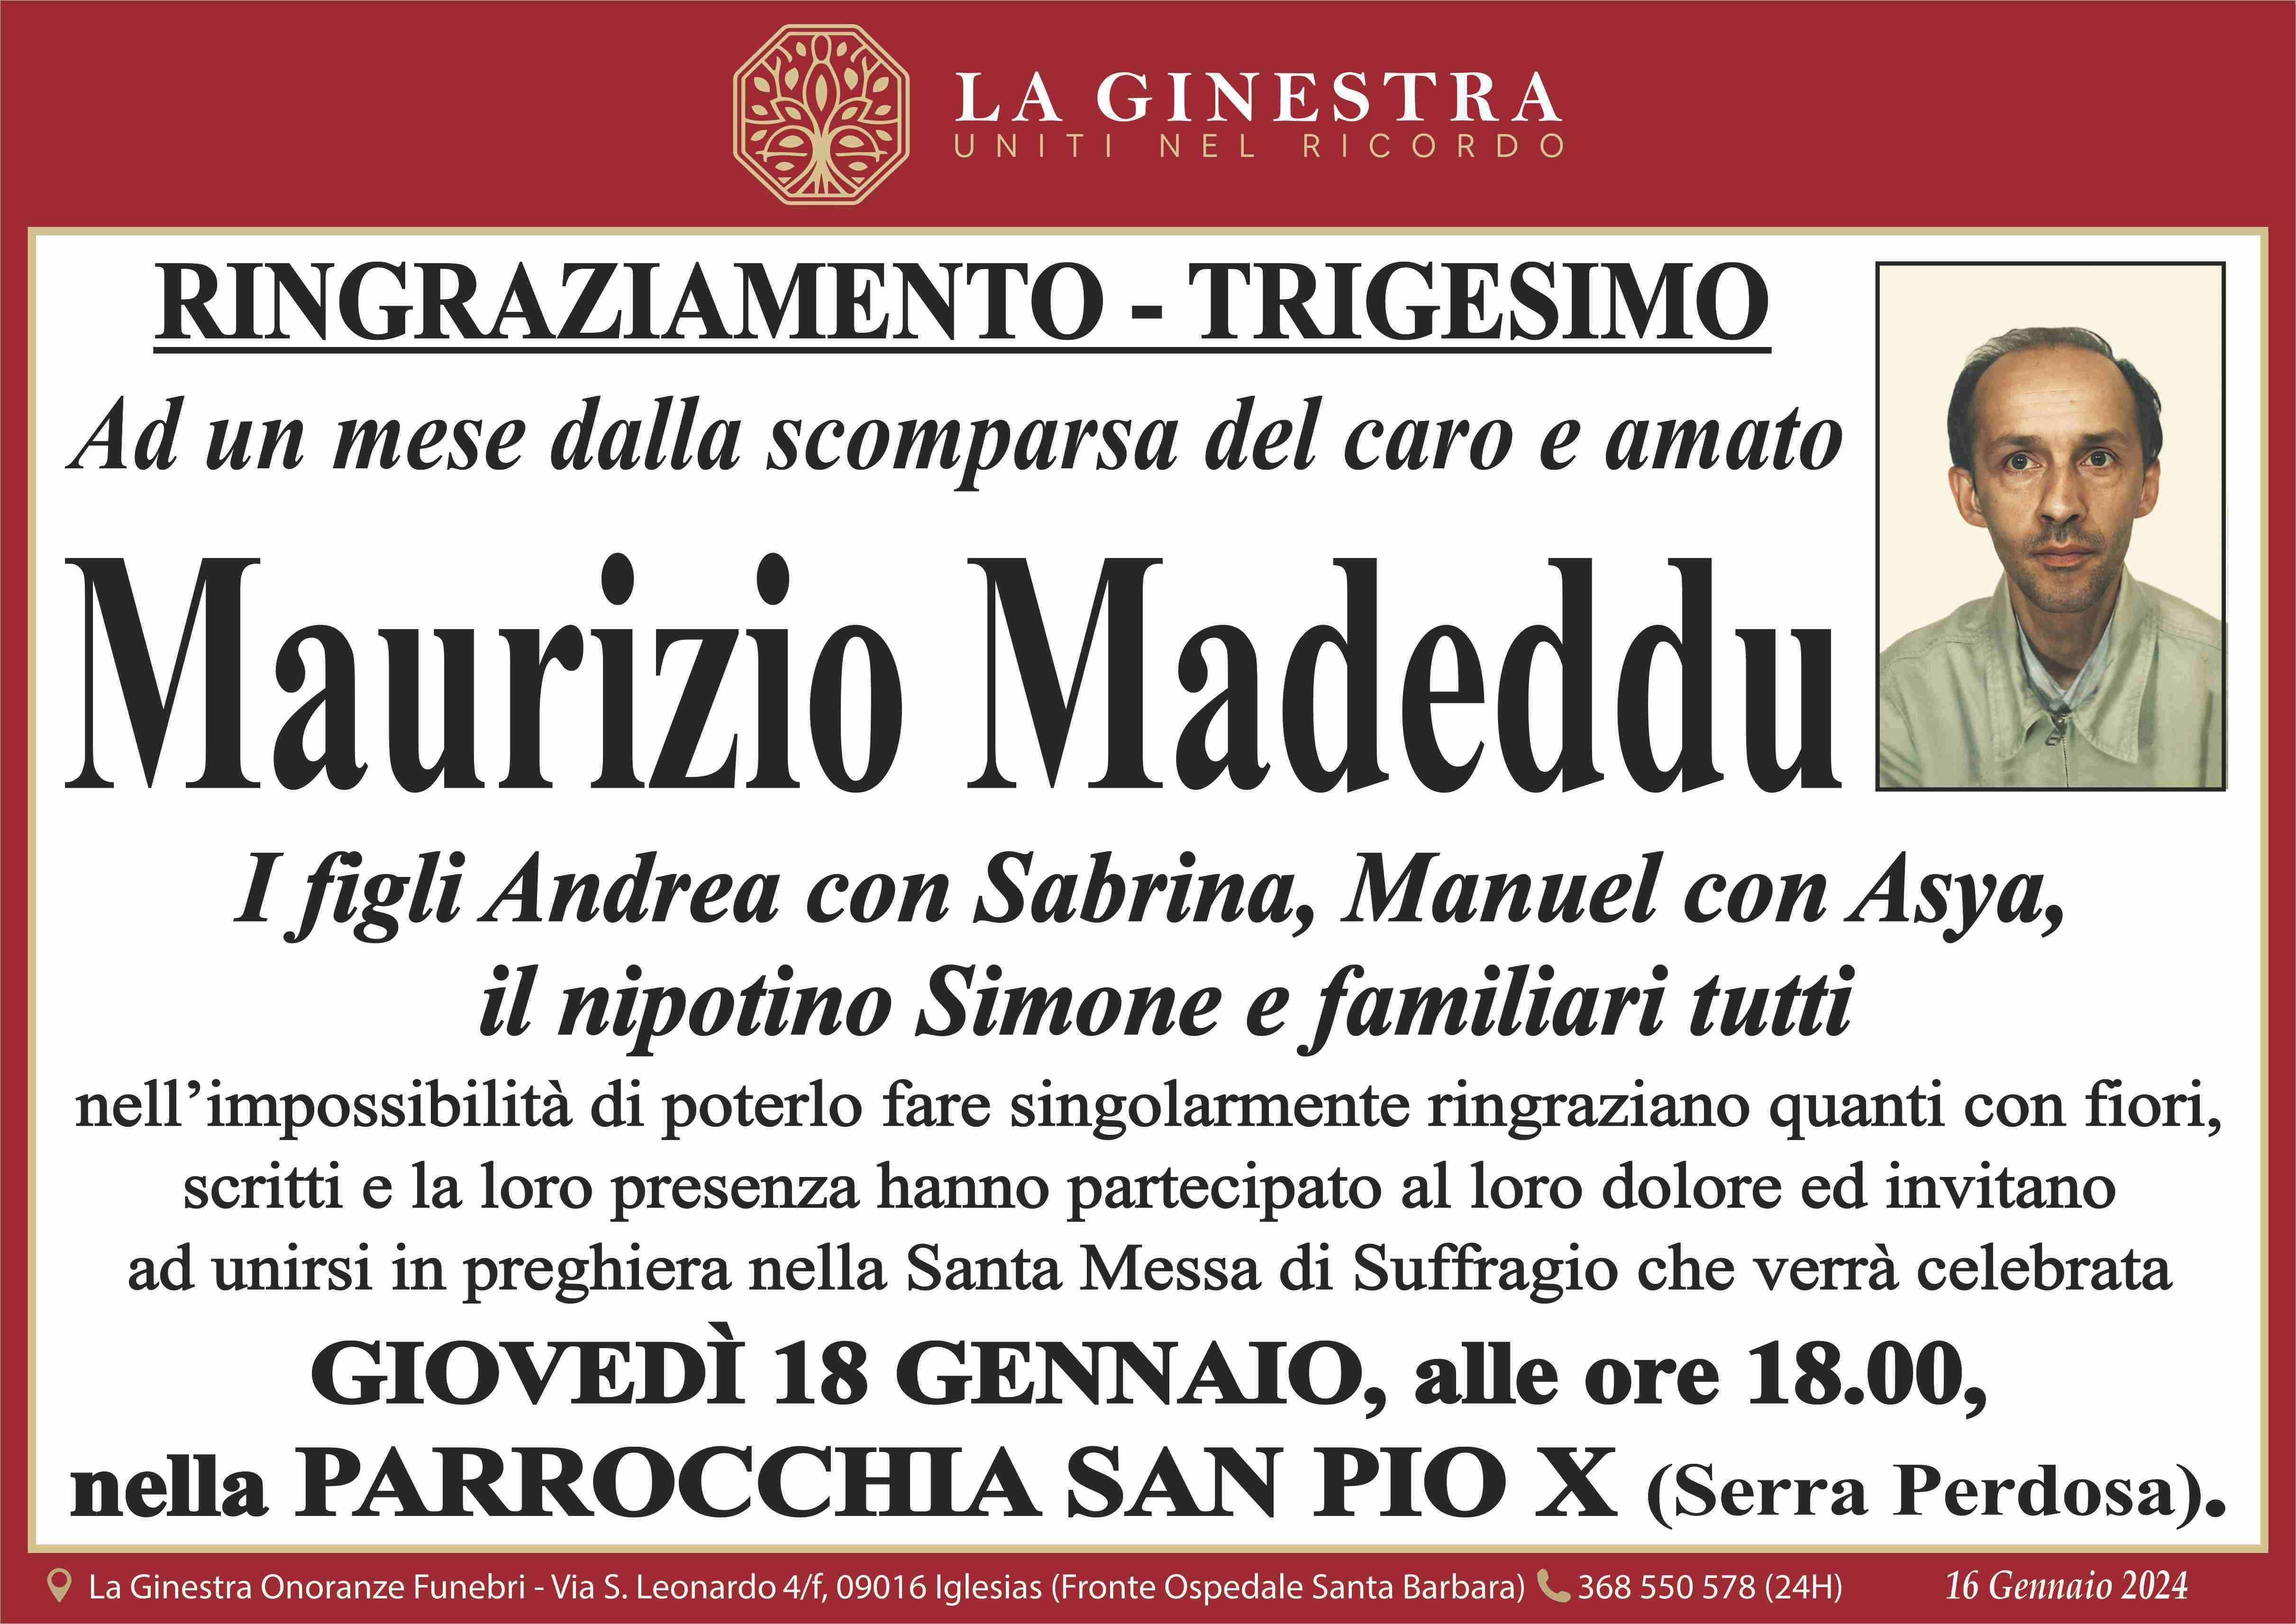 Maurizio Madeddu